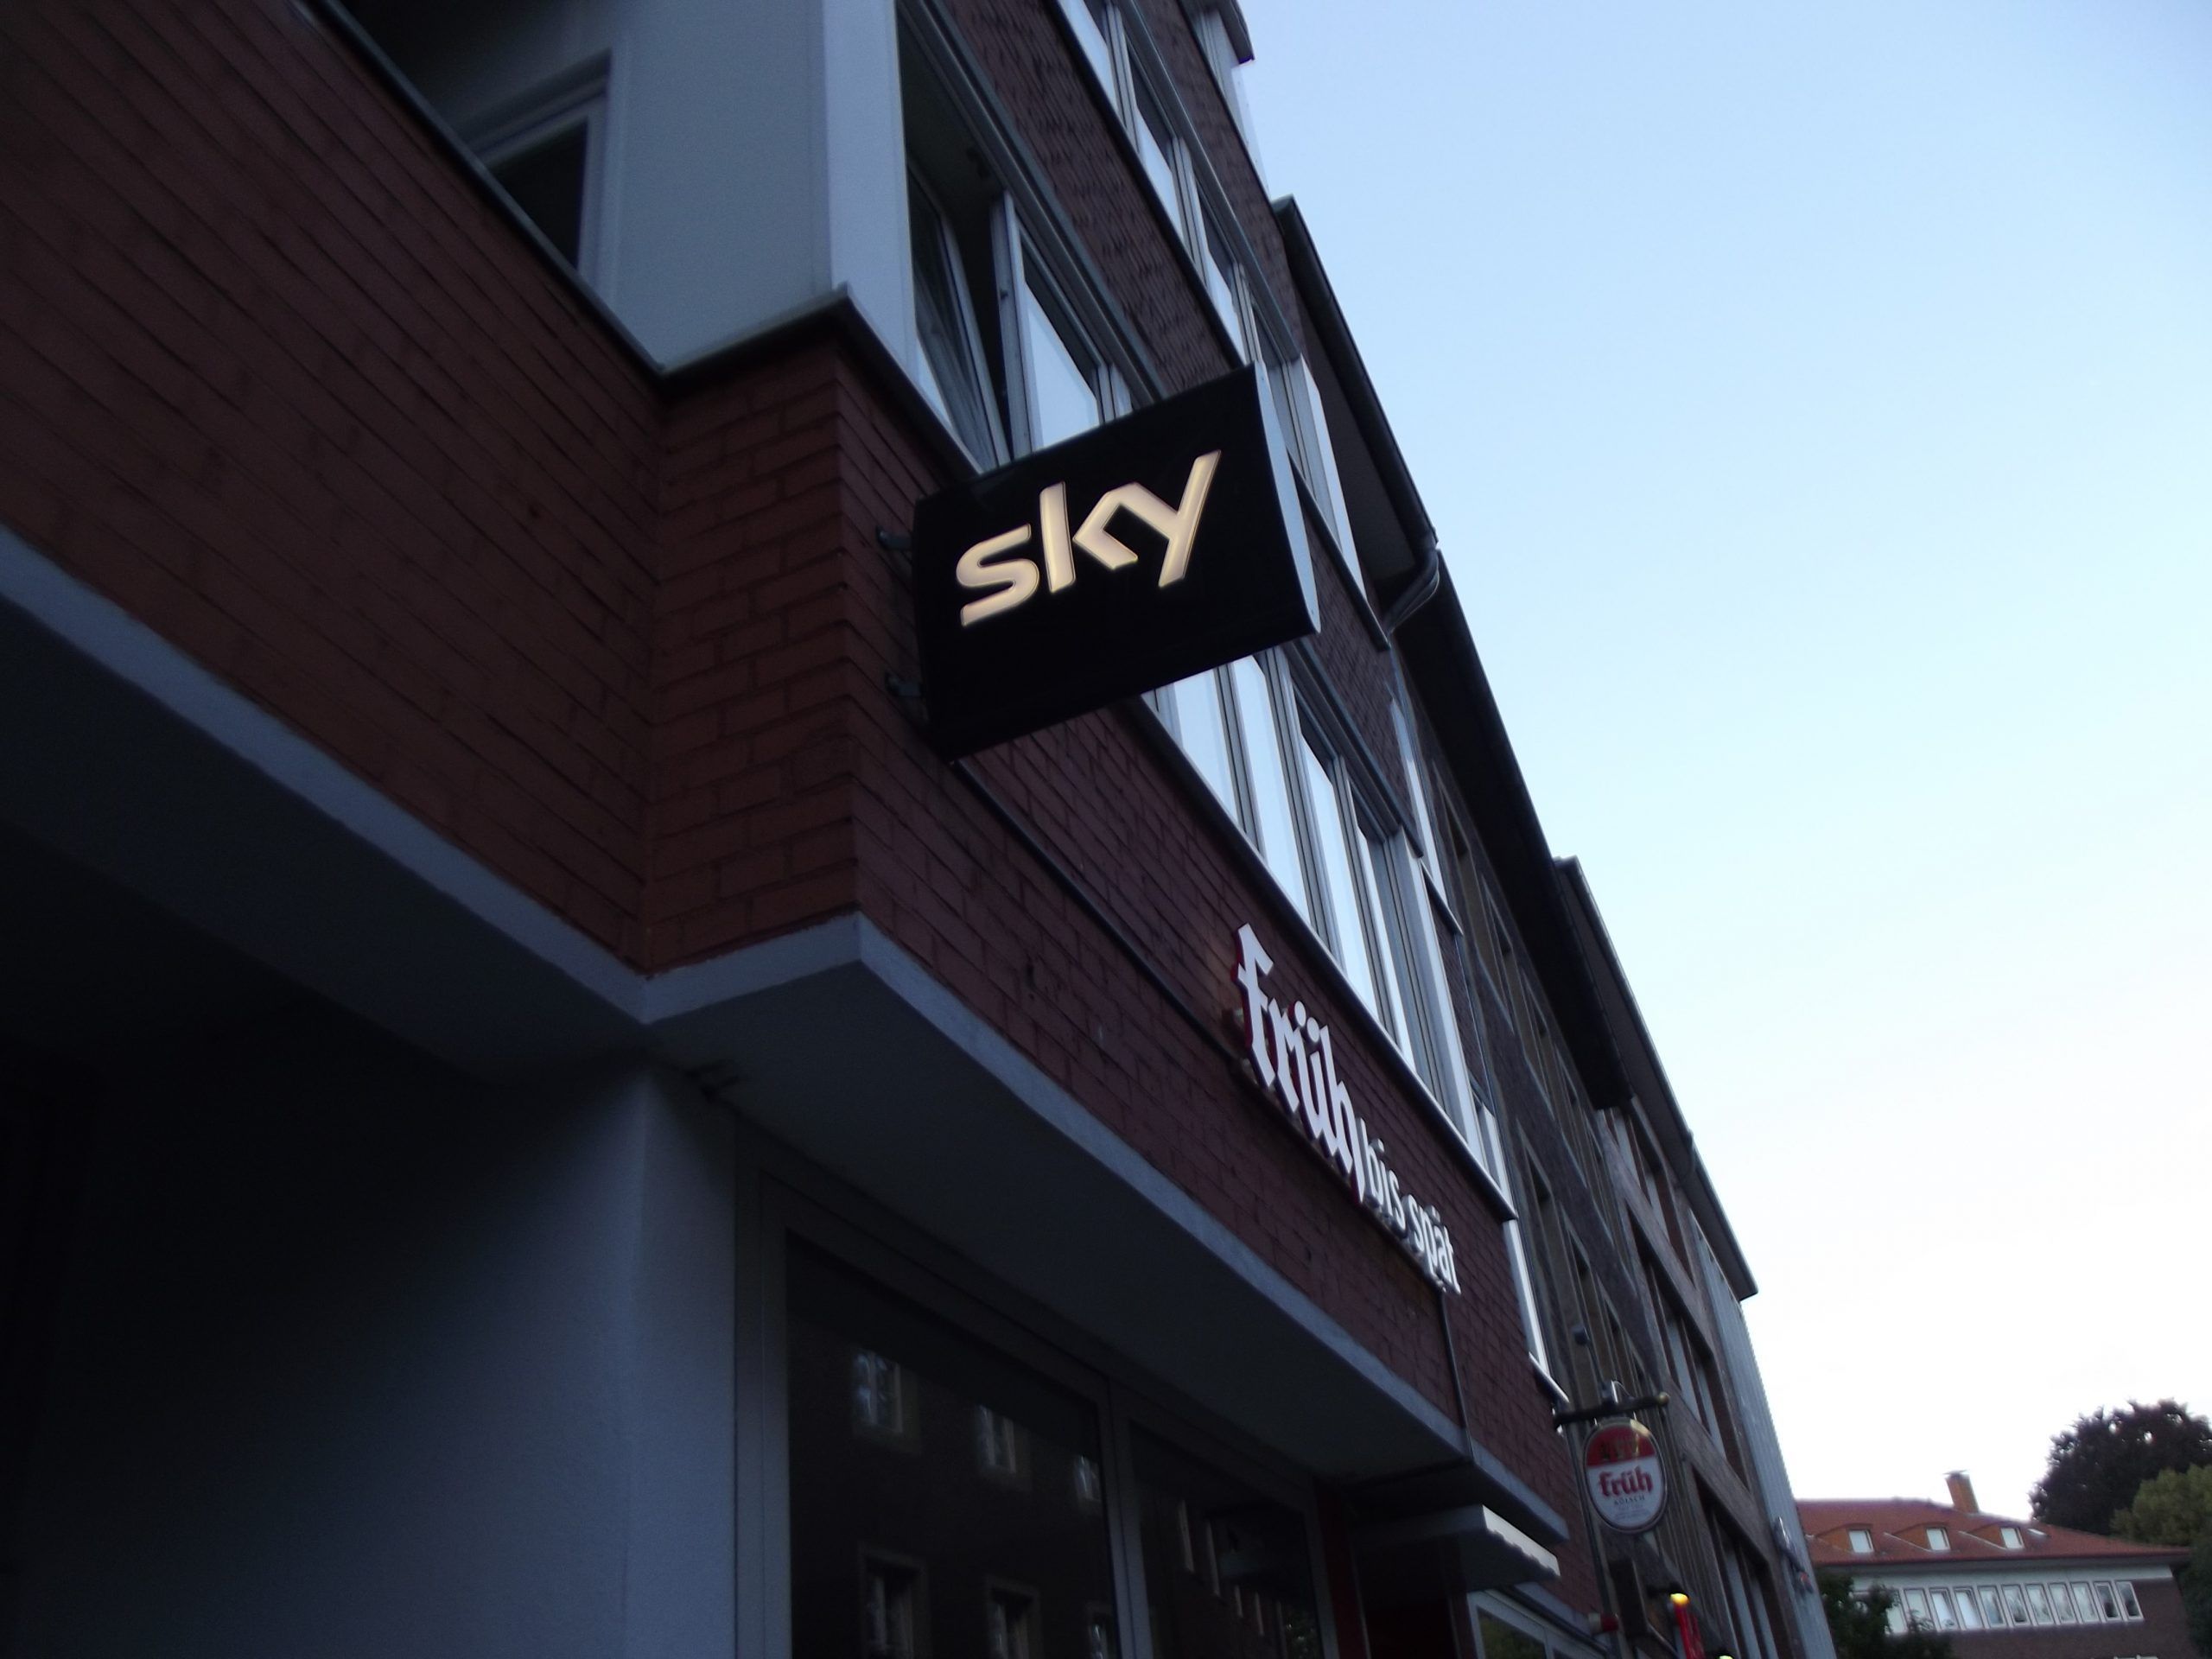 Sky, nuova stagione tv 2014-2015 con X Factor: 5 talent show, serie tv e cinema